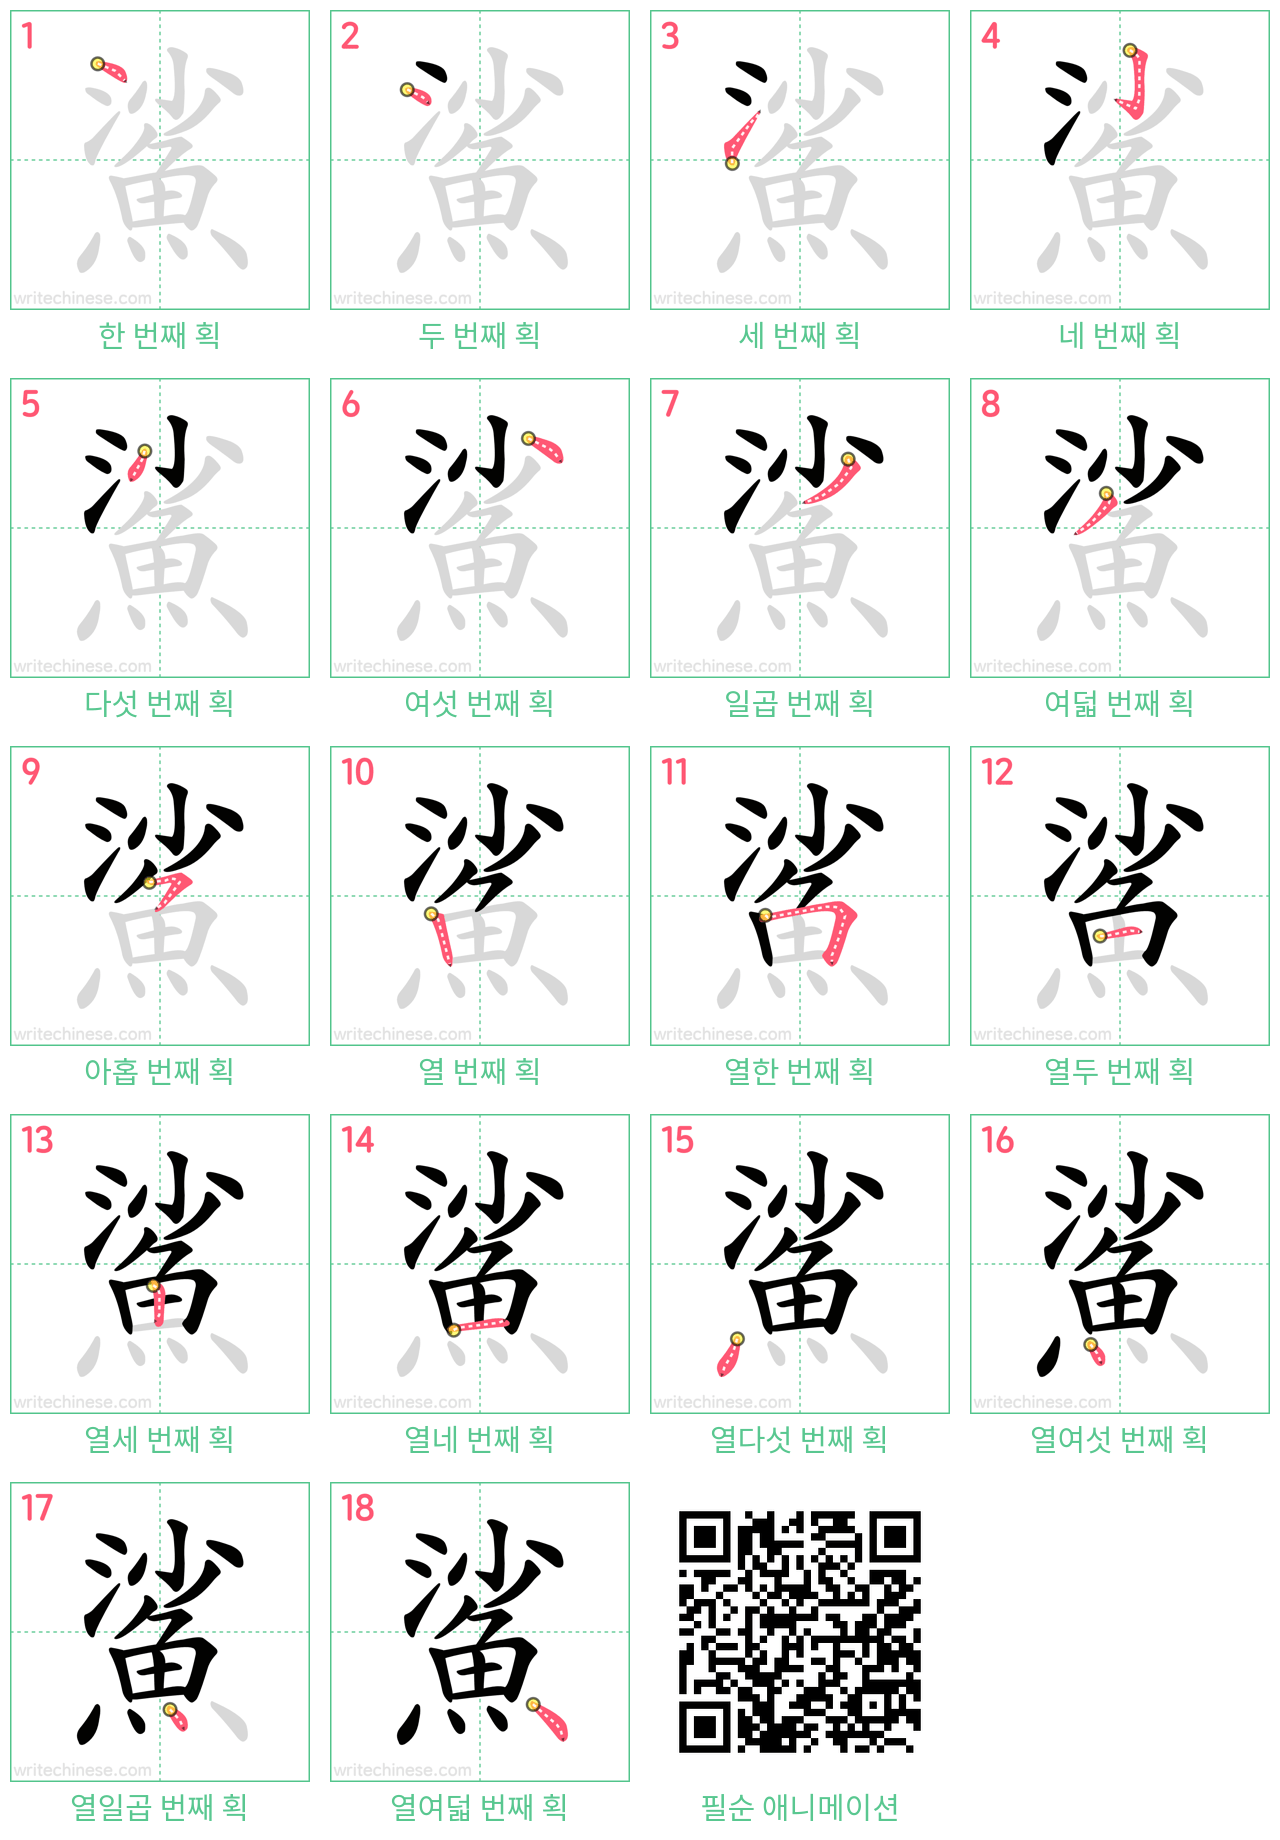 鯊 step-by-step stroke order diagrams